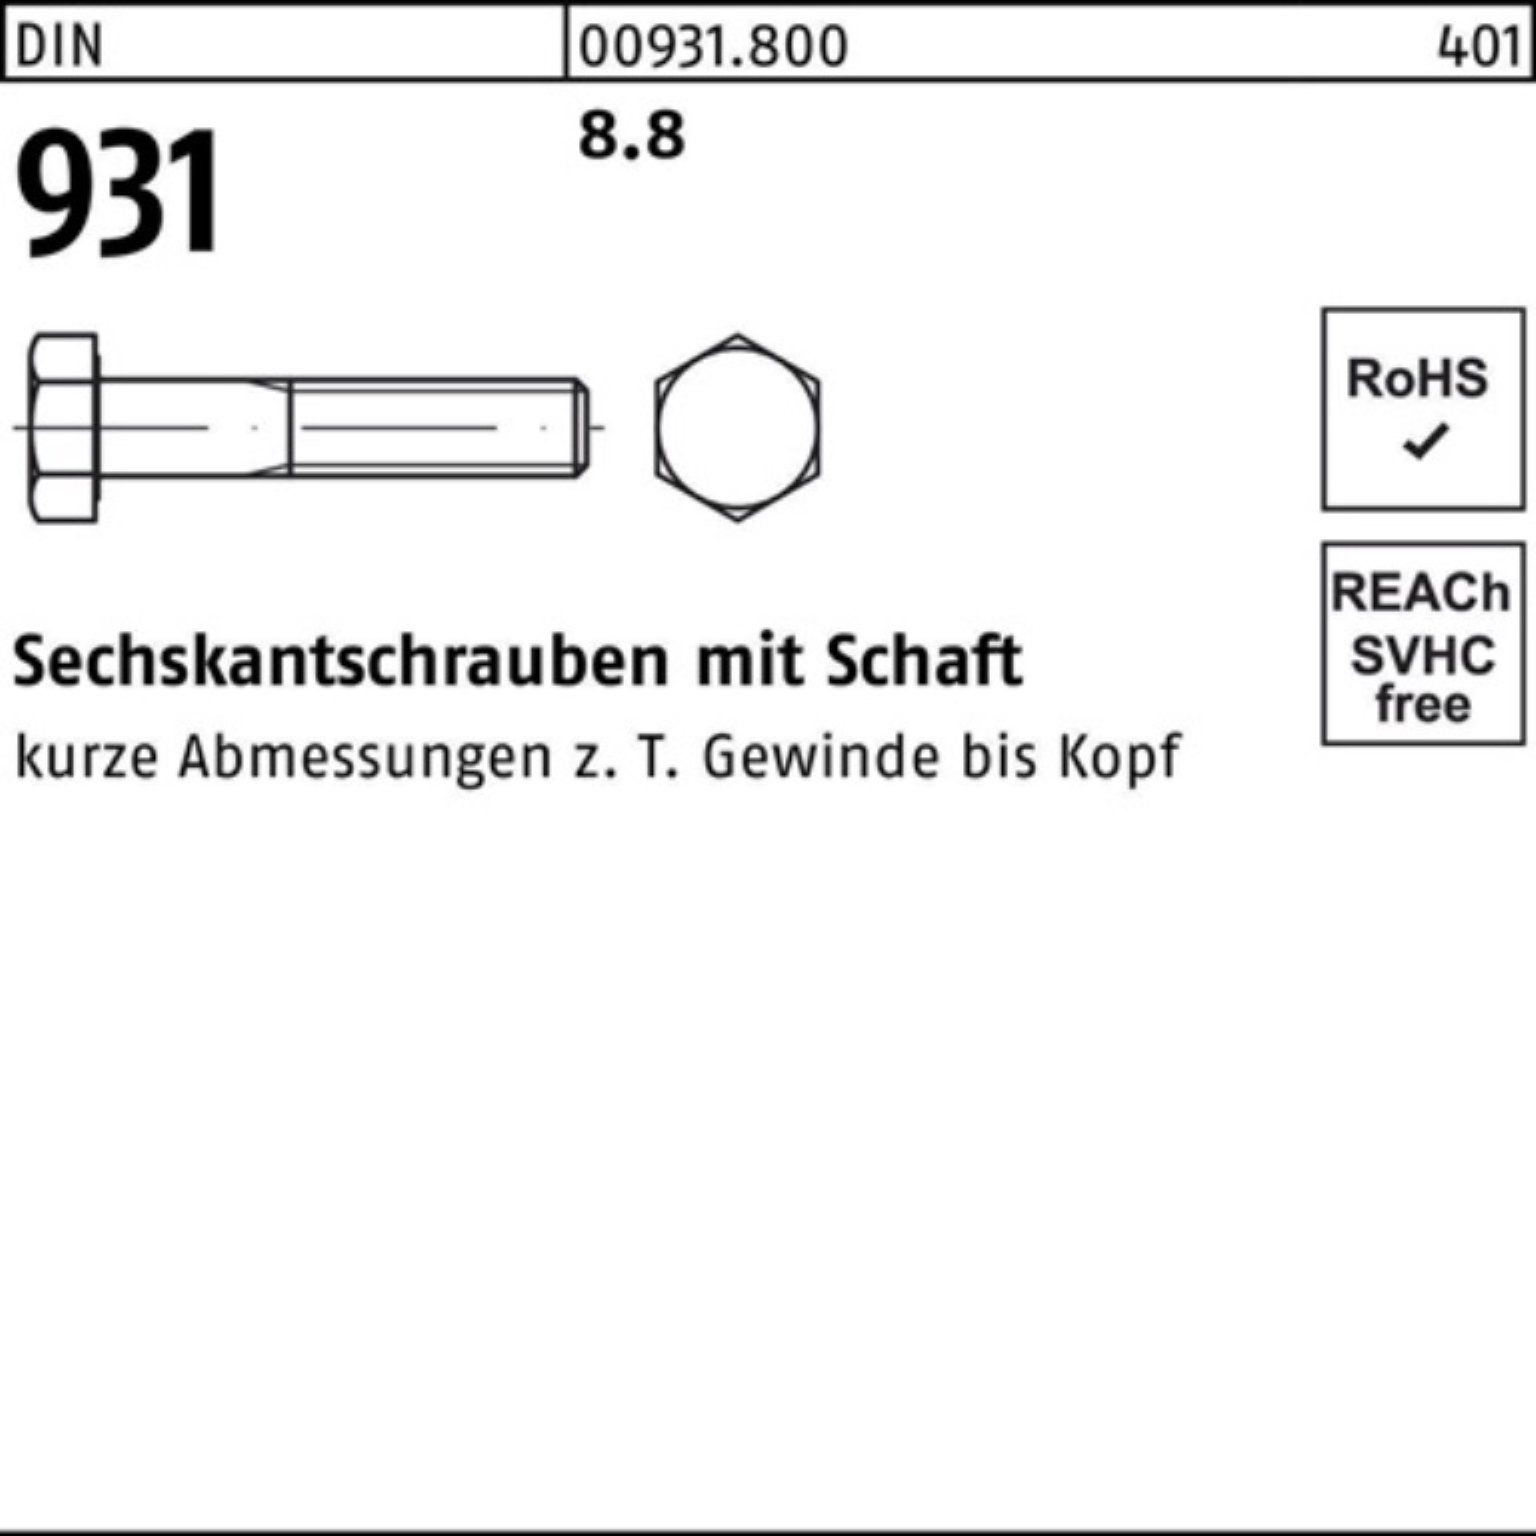 Sechskantschraube Sechskantschraube 8.8 Schaft Pack M3x DIN 500er 500 Reyher 931 Stück DIN 30